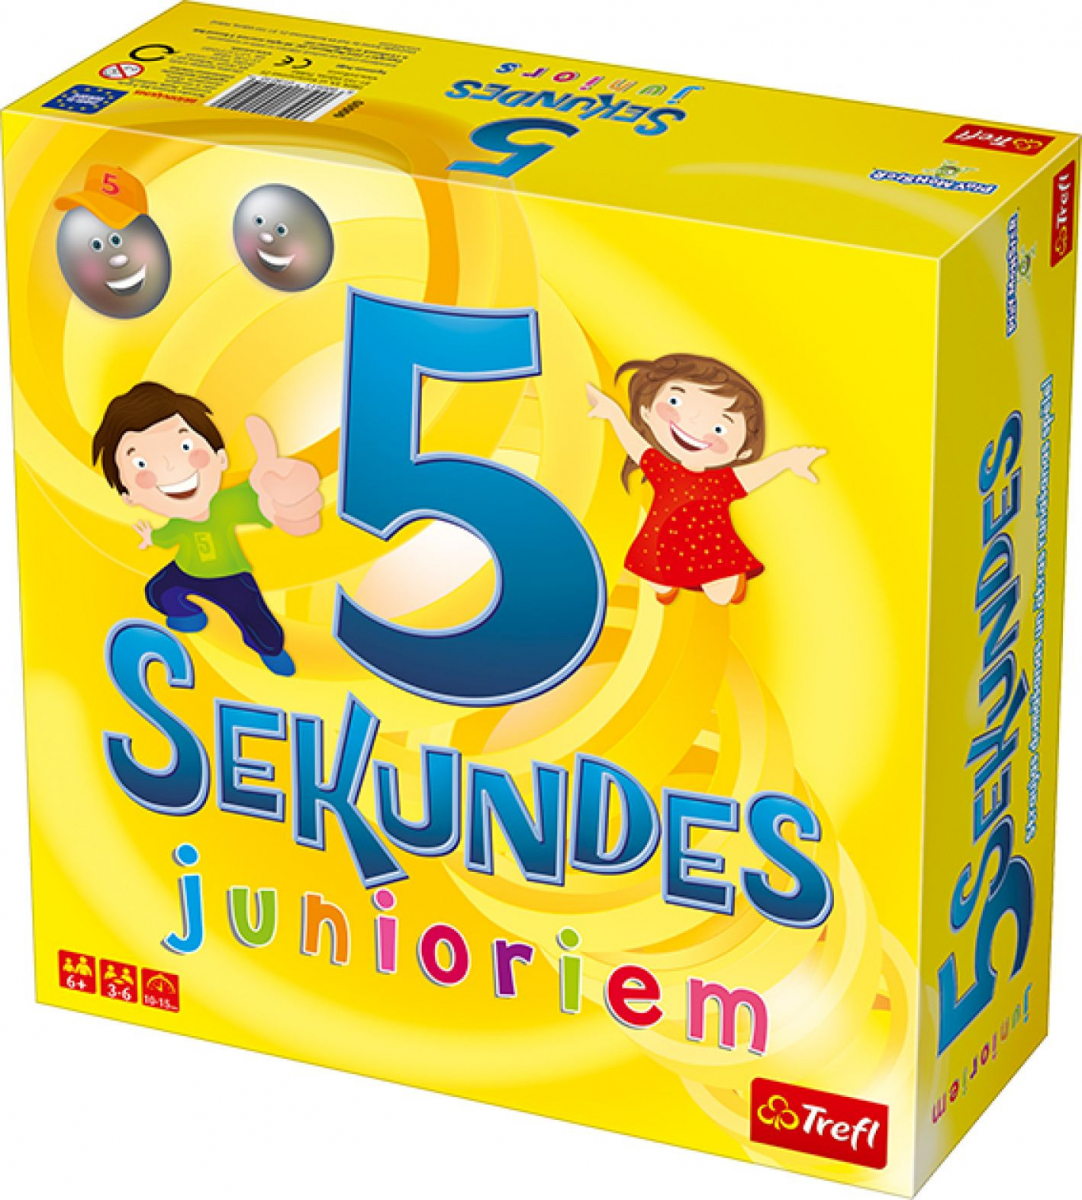 5 sekundes Junior